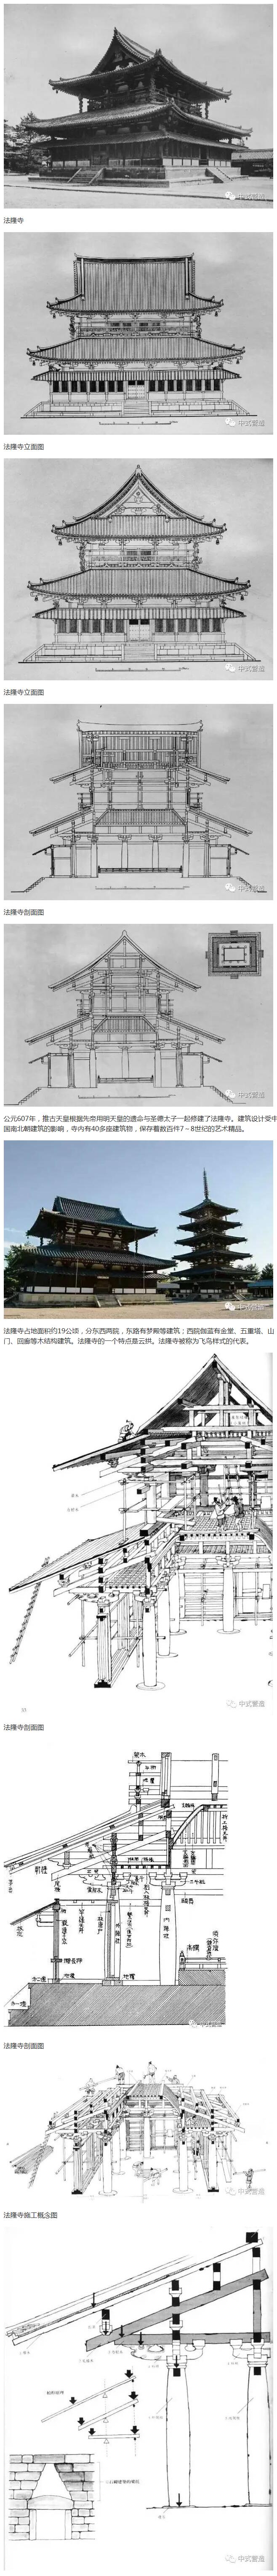 中国传统建筑|唐的样子|307. 【鉴赏】法隆寺金堂结构图与木质模型赏析